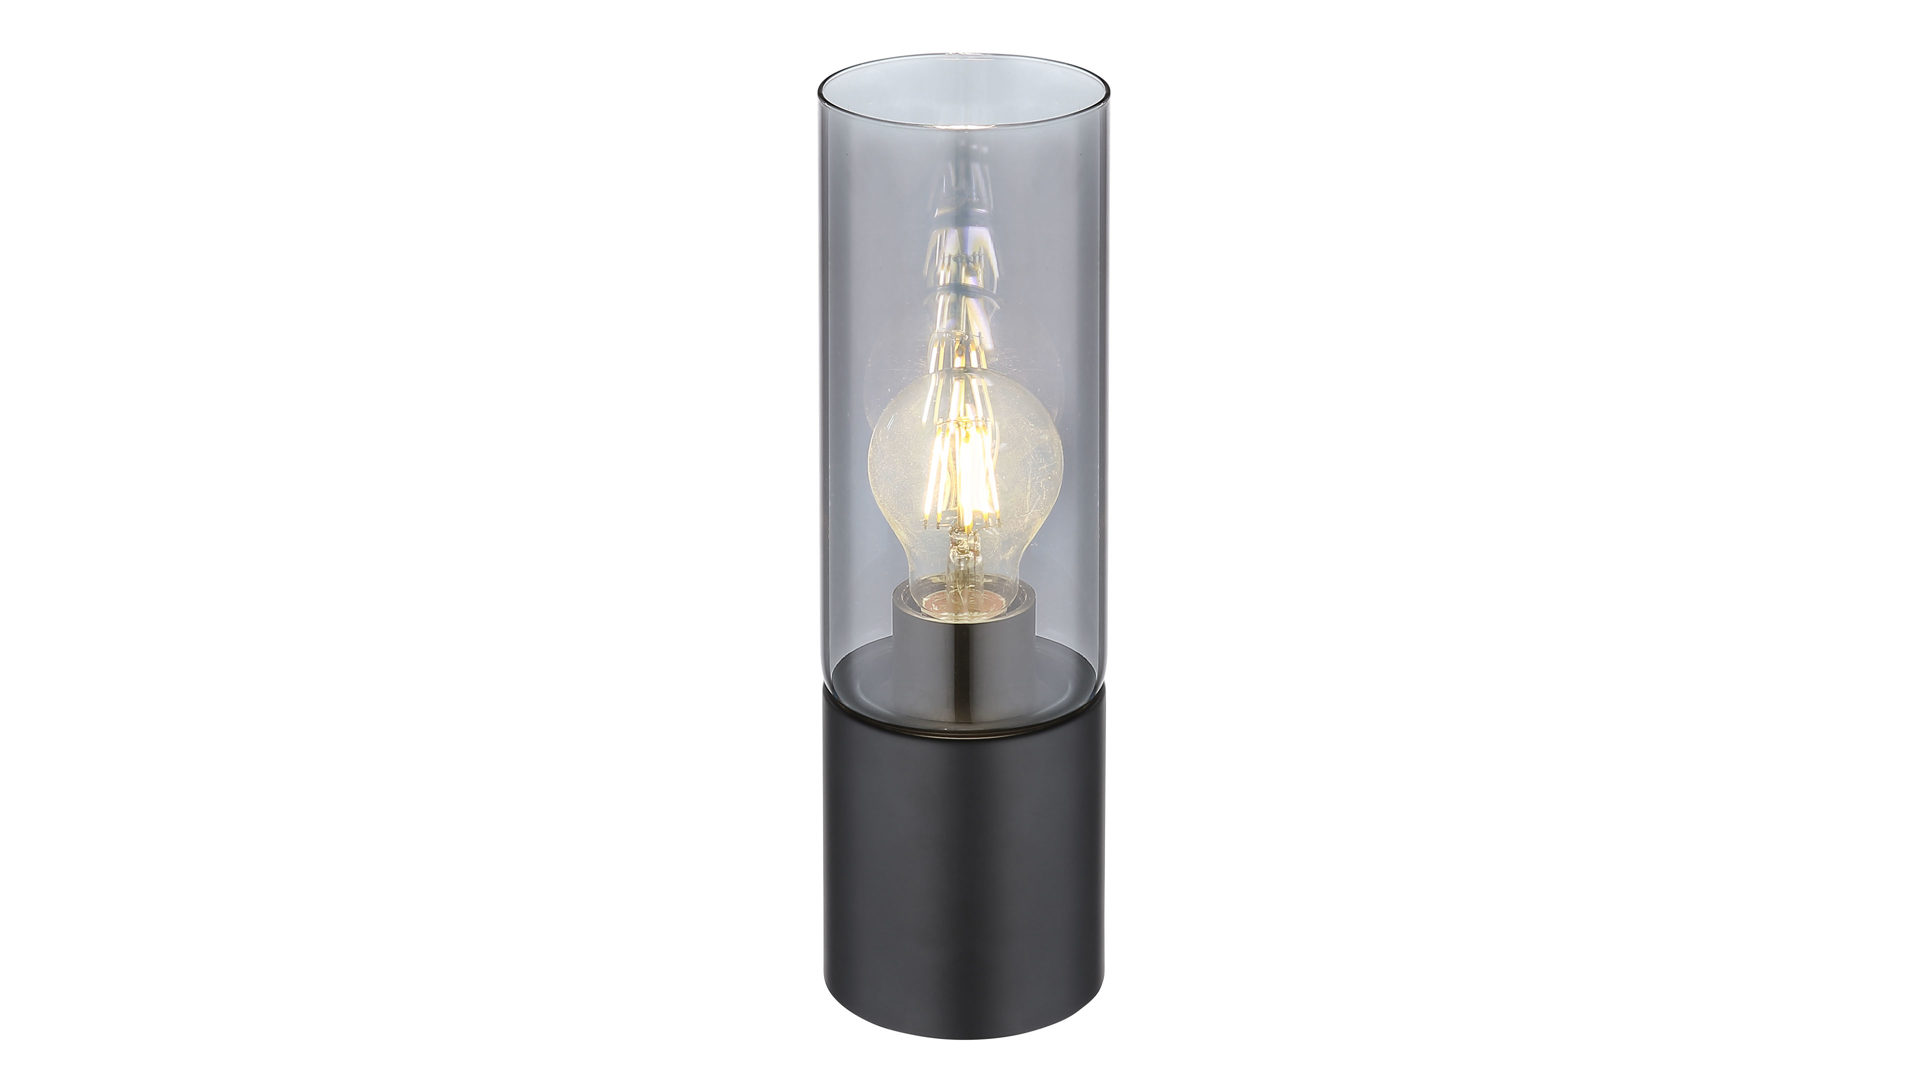 Tischleuchte Globo lighting aus Glas in Dunkelgrau GLOBO Leuchten Serie Annika - Tischlampe mattschwarz & Rauchglas - Durchmesser  ca. 90 cm